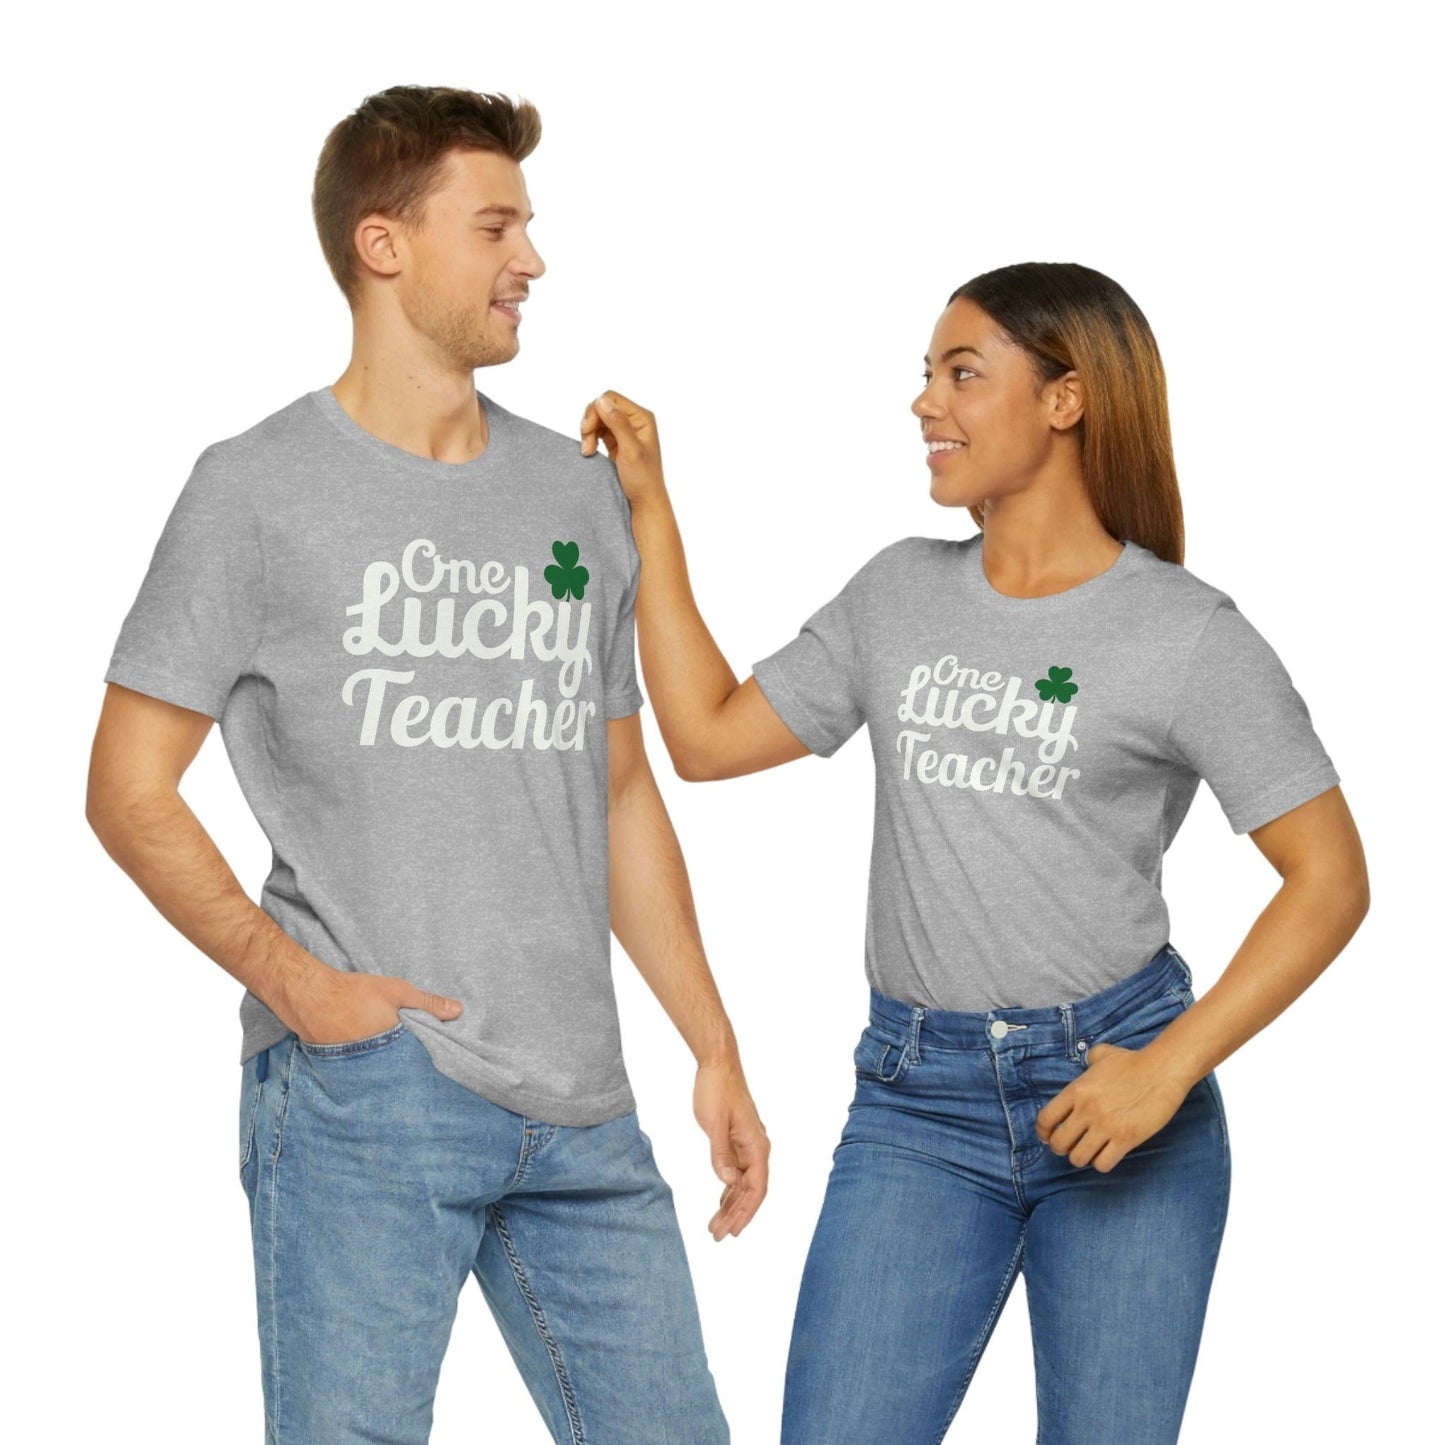 One Lucky Teacher Shirt feeling Lucky St Patrick's Day shirt - Funny St Paddy's day Funny Shirt - Giftsmojo